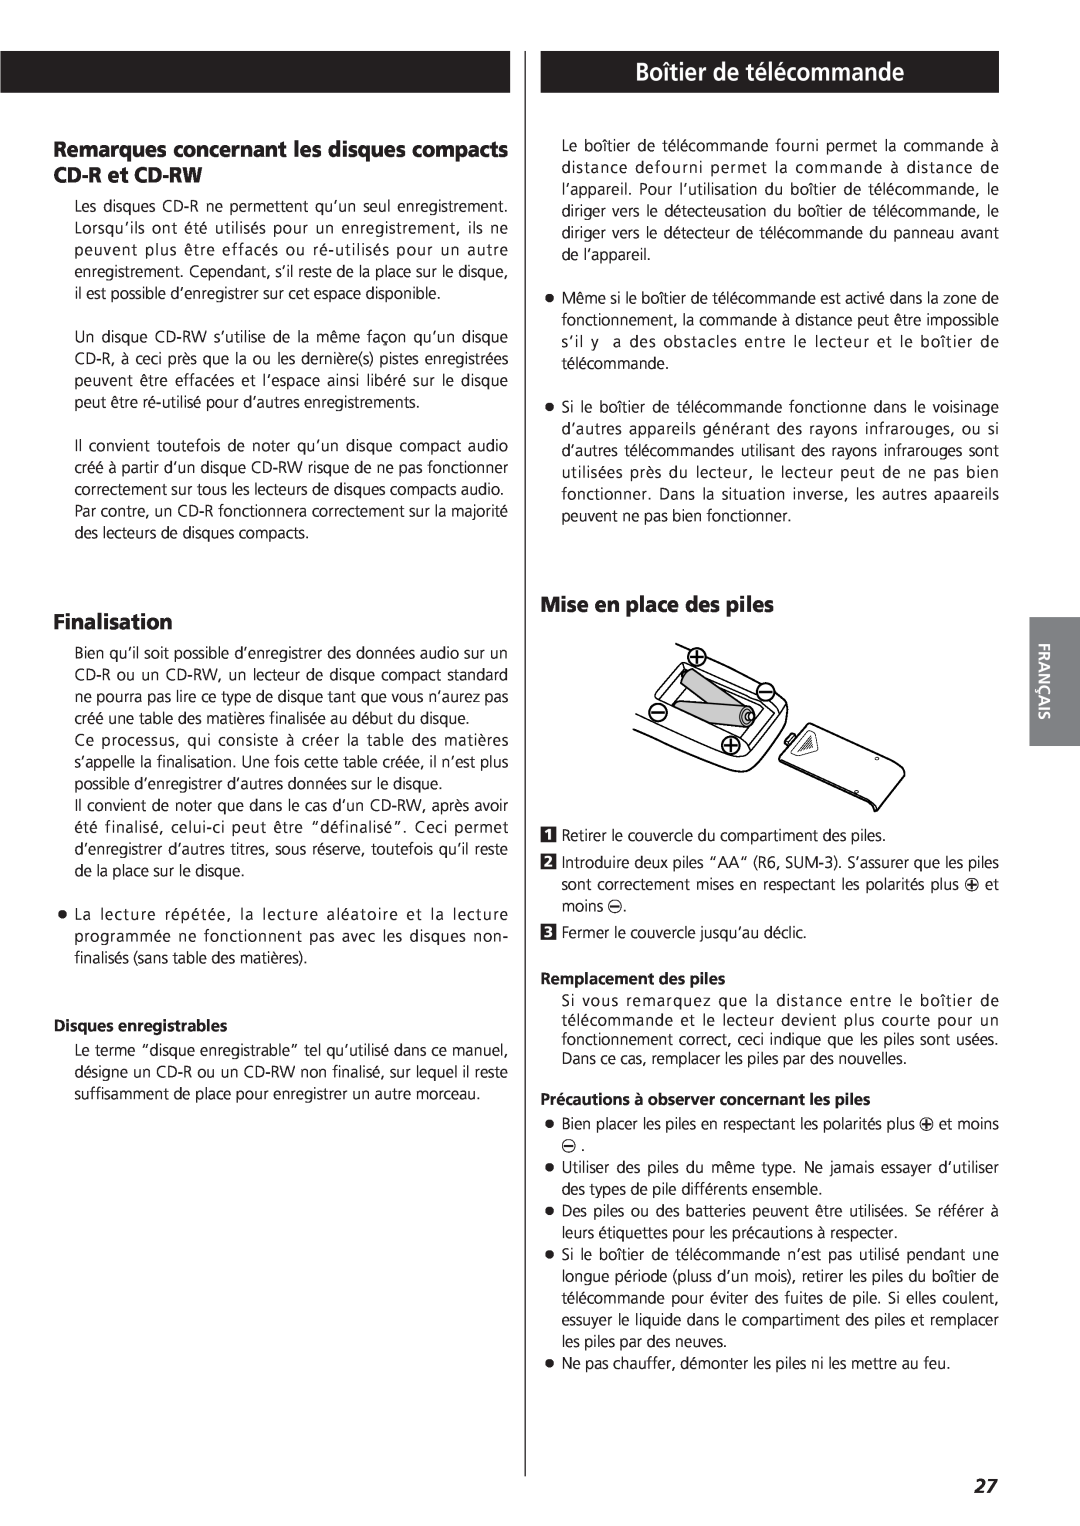 Sanyo CD-RW880 Boîtier de télécommande, Finalisation, Mise en place des piles, Disques enregistrables, Français 